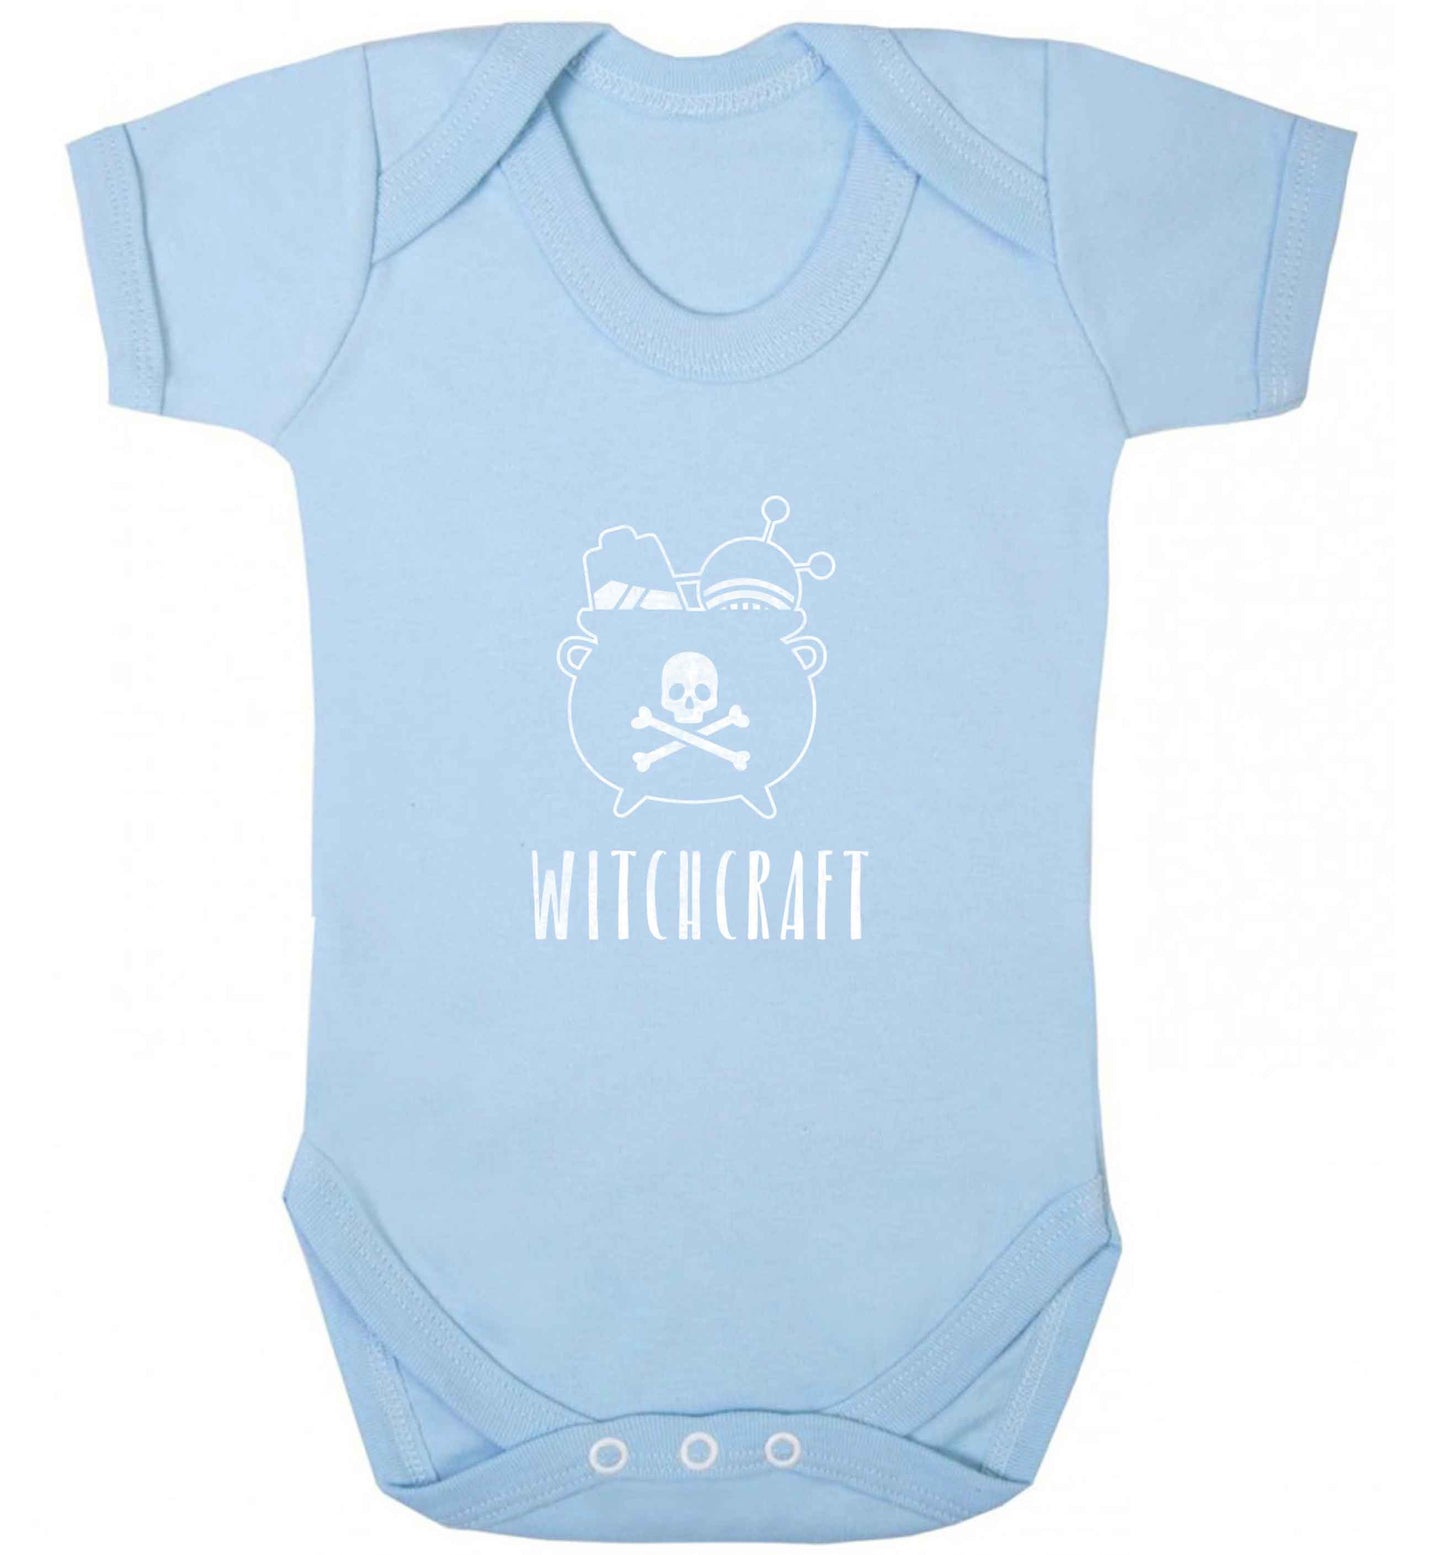 Witchcraft baby vest pale blue 18-24 months